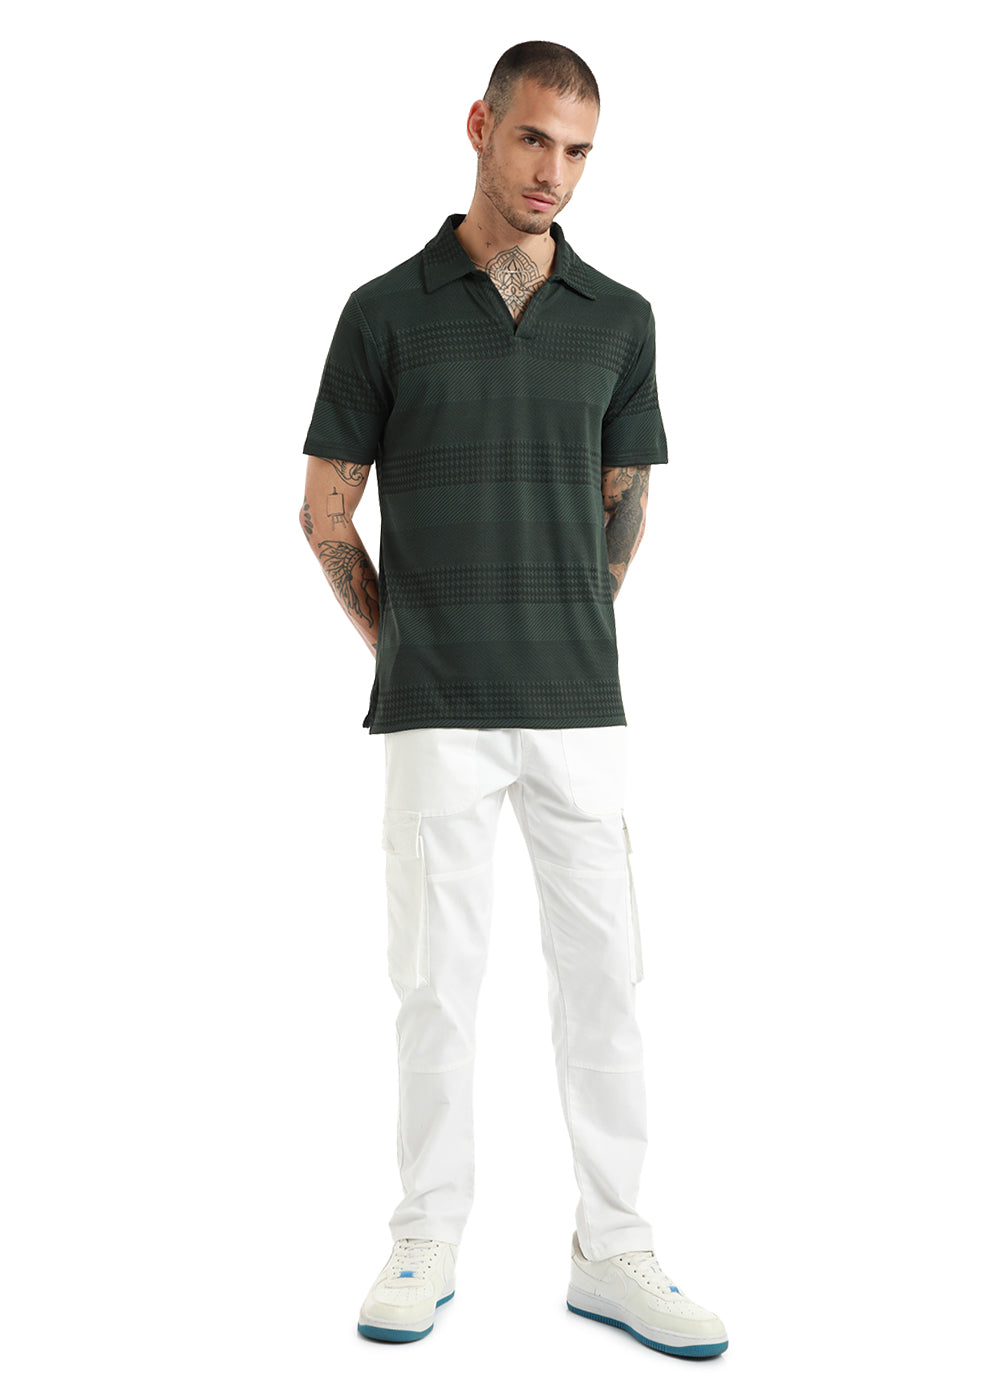 Jacquard Olive Polo Tshirt